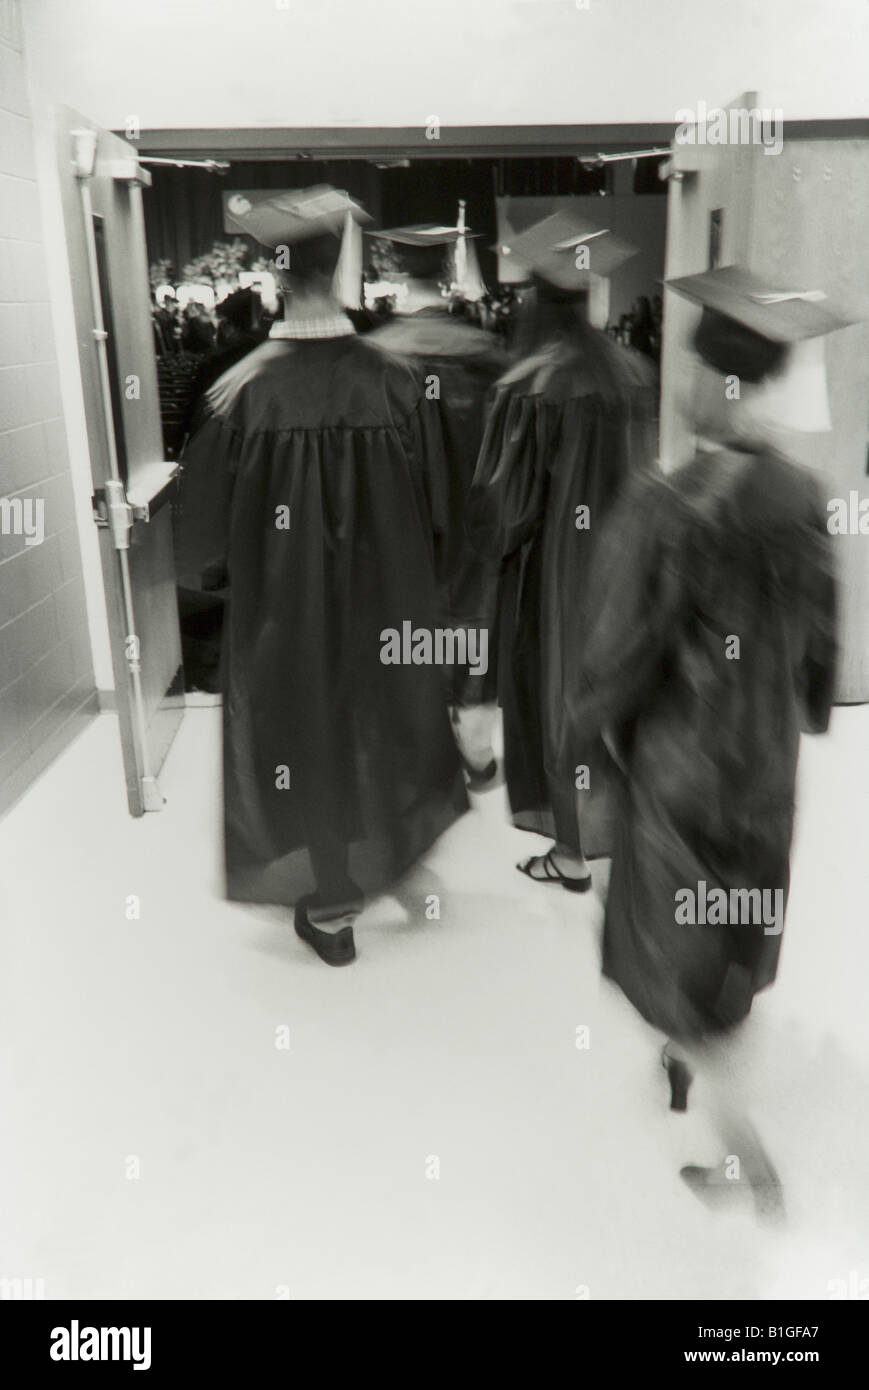 College-Absolventen an der Abschlussfeier, Graduierung Roben tragen, erhalten Diplome, B + W Bild, erlauben Bewegung Stockfoto